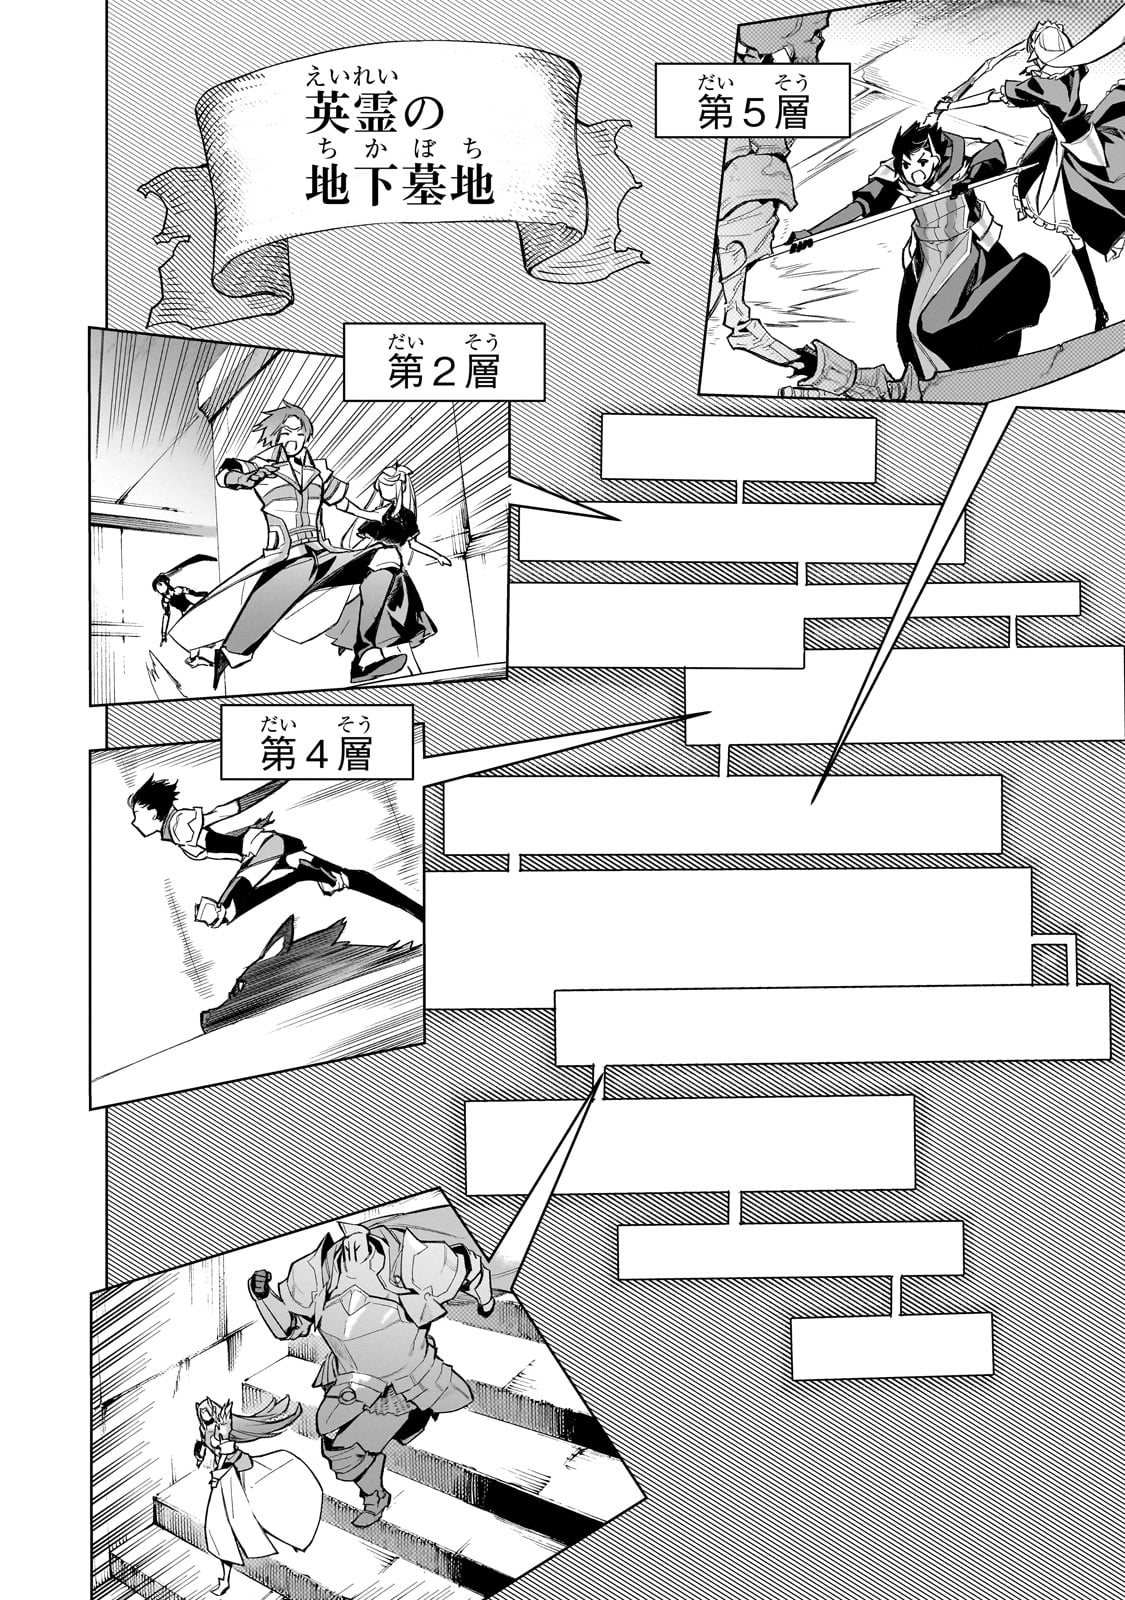 Kuro no Shoukanshi - Chapter 130 - Page 16